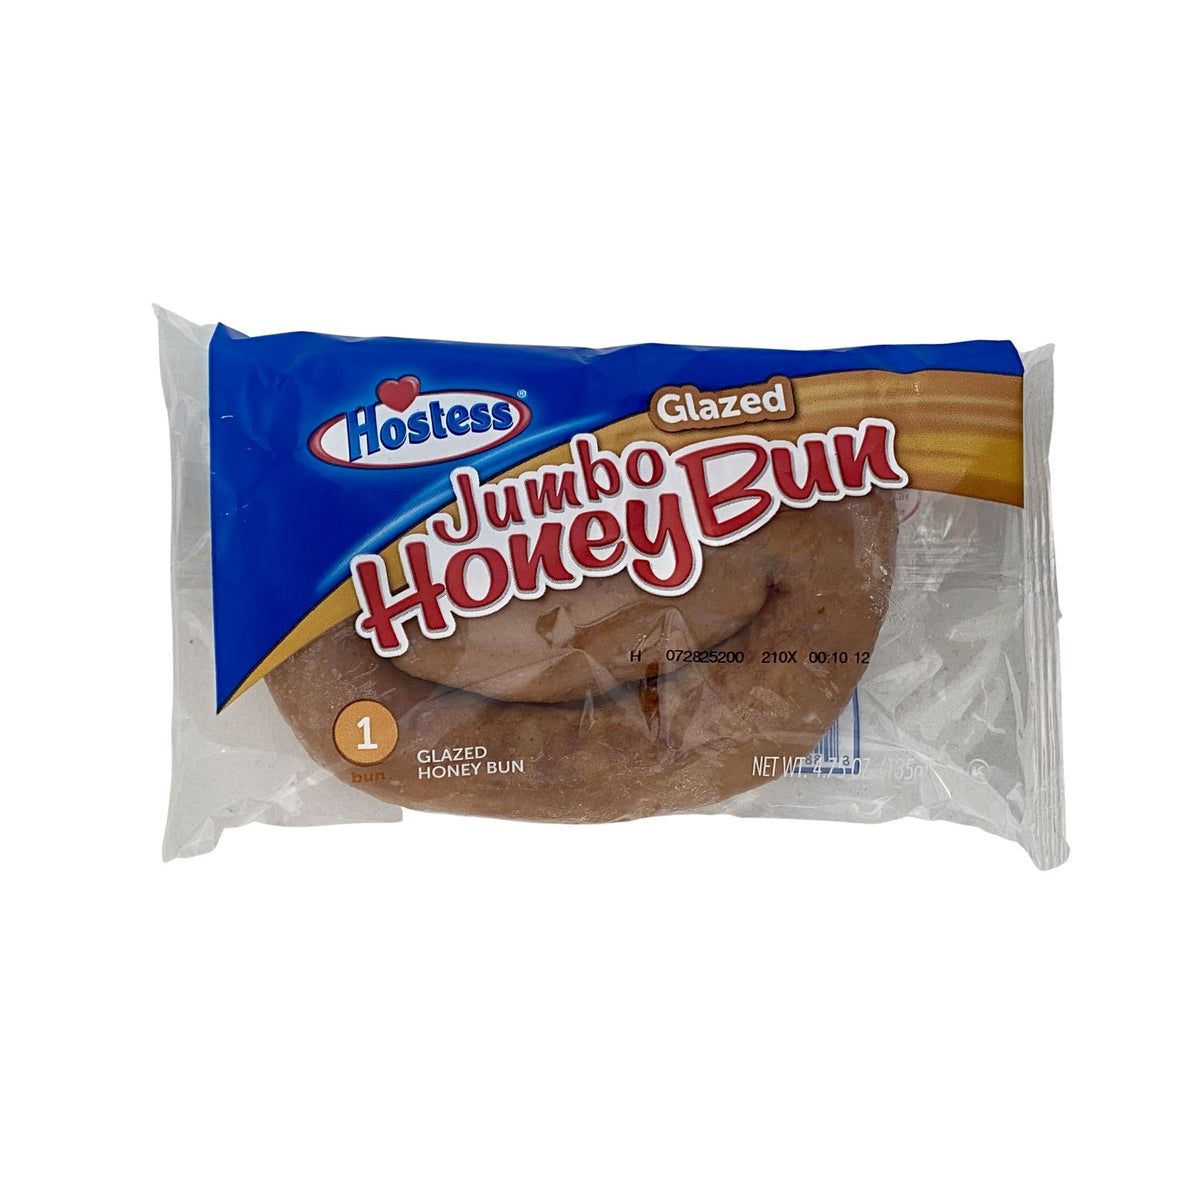 HOSTESS® Jumbo Glazed Honey Bun, 4 oz - Gerbes Super Markets